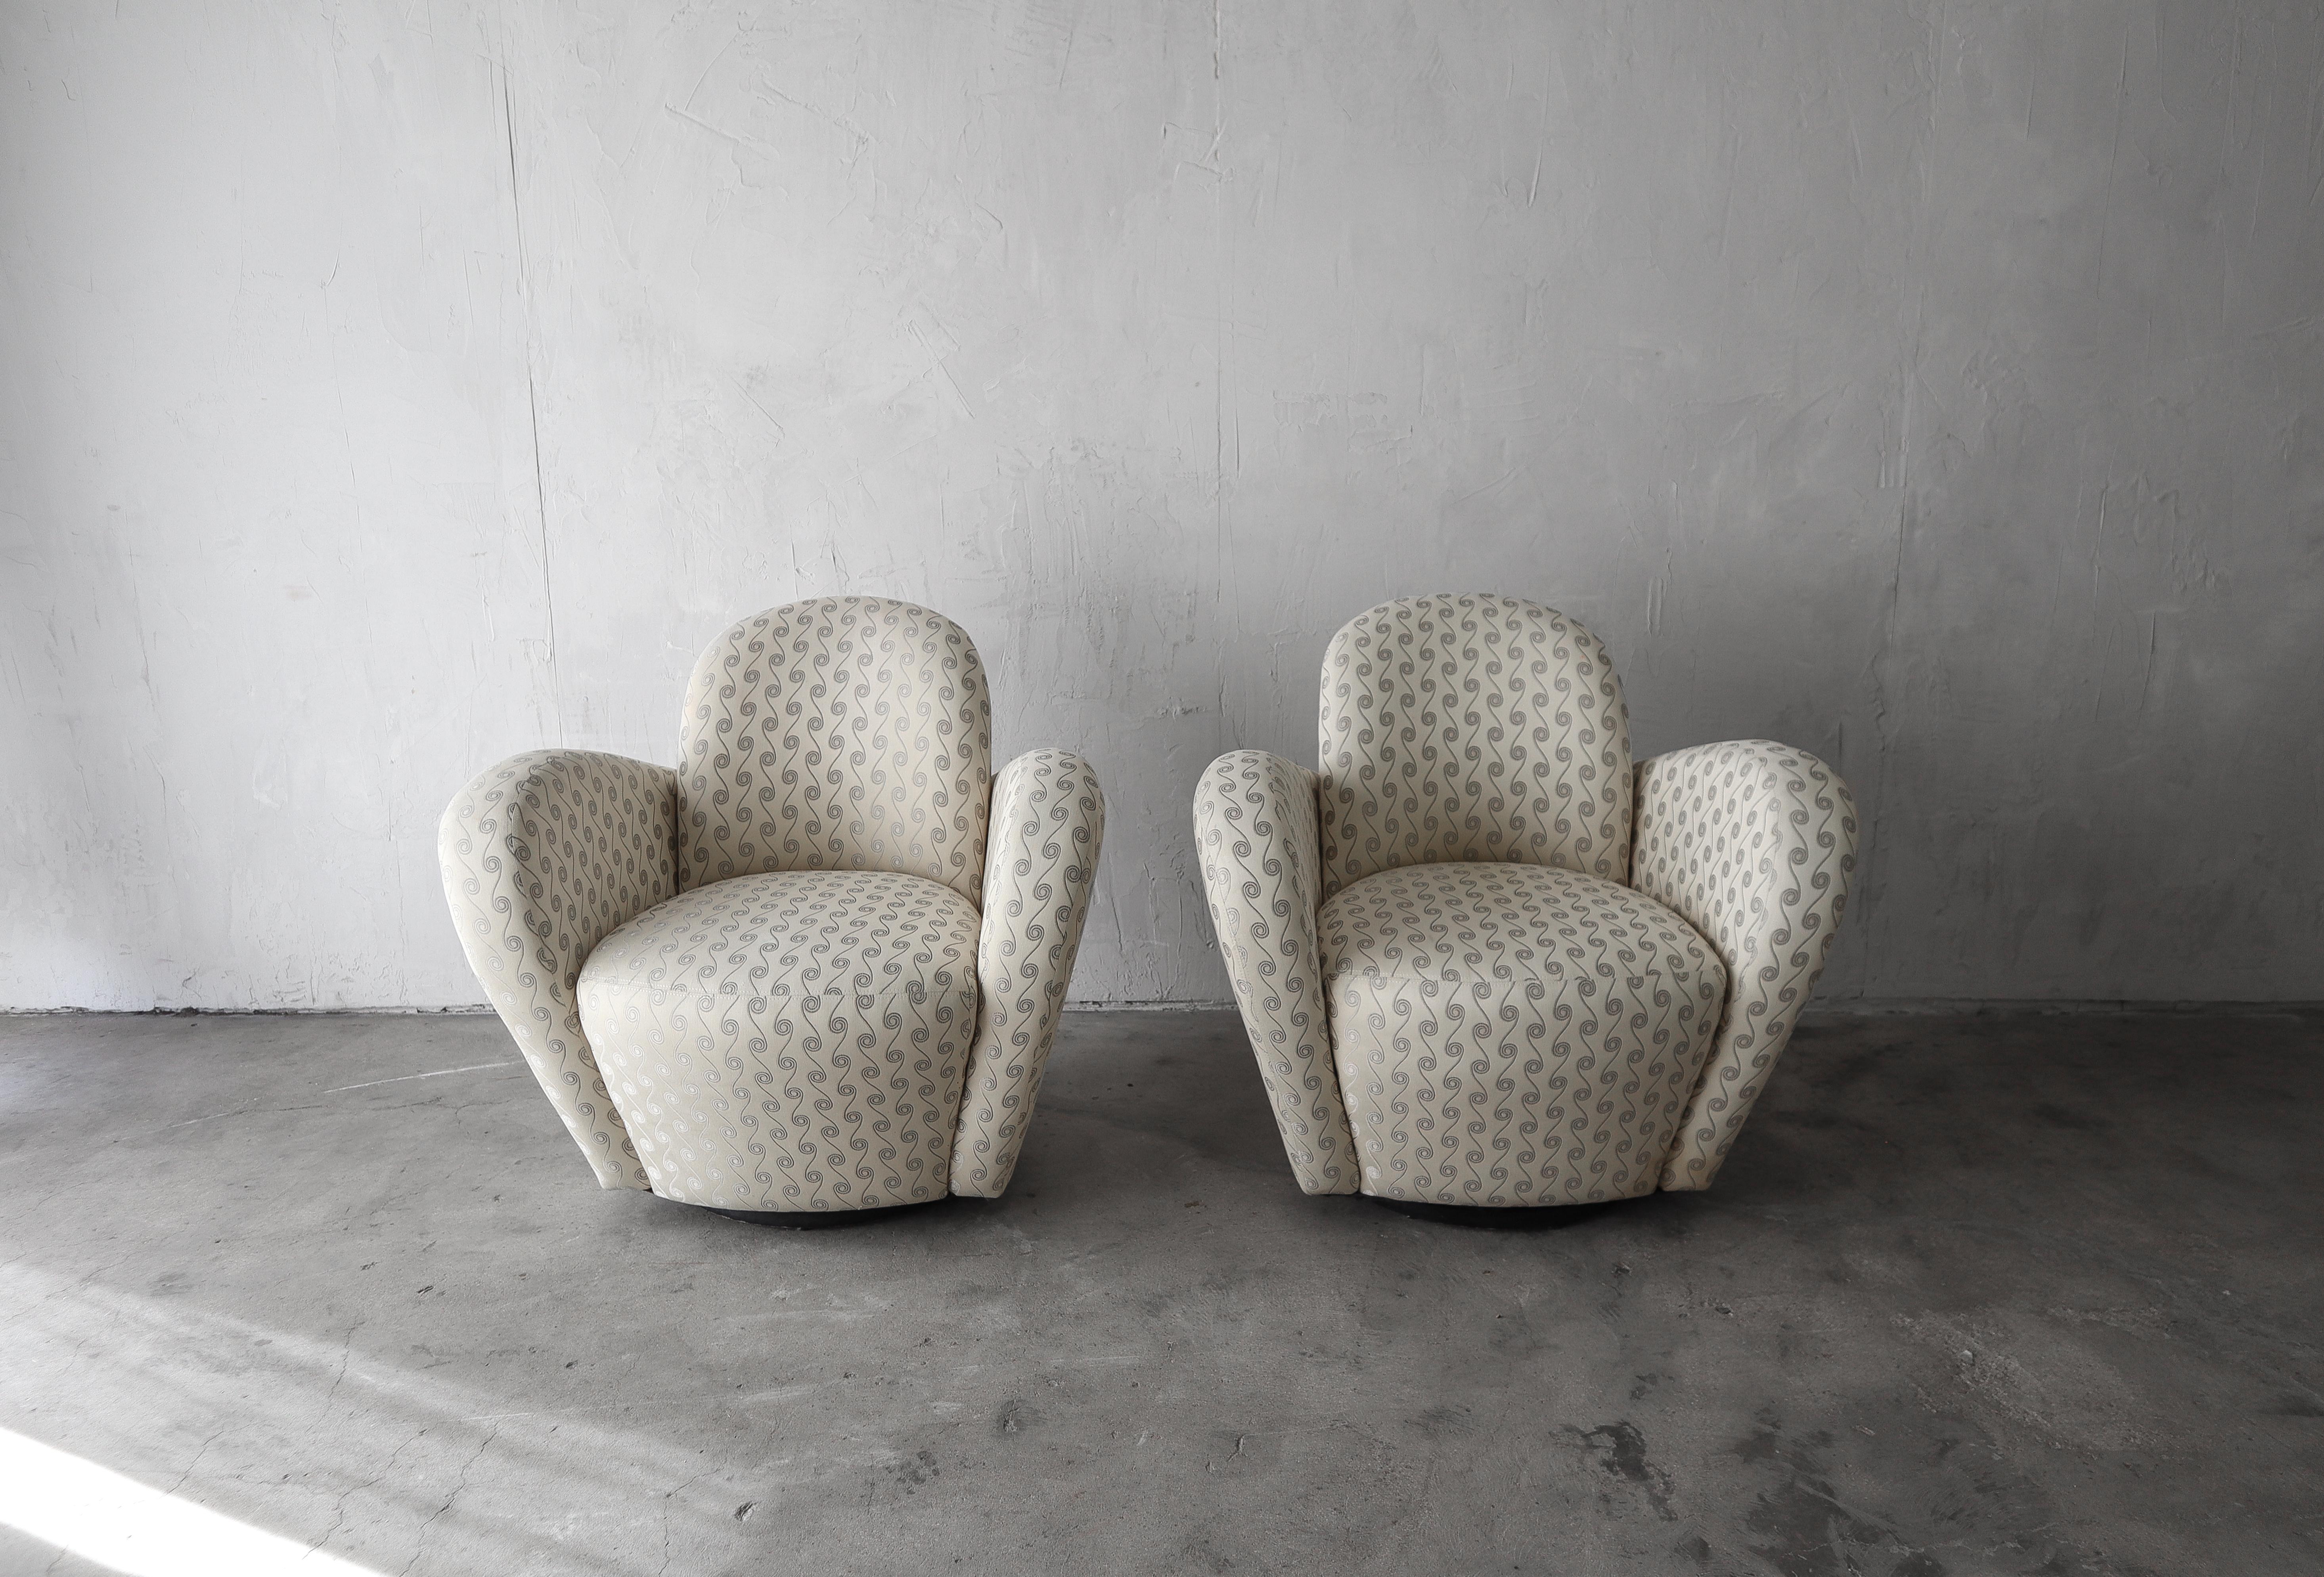 Une belle paire de chaises Miami originales de Michael Wolk.

